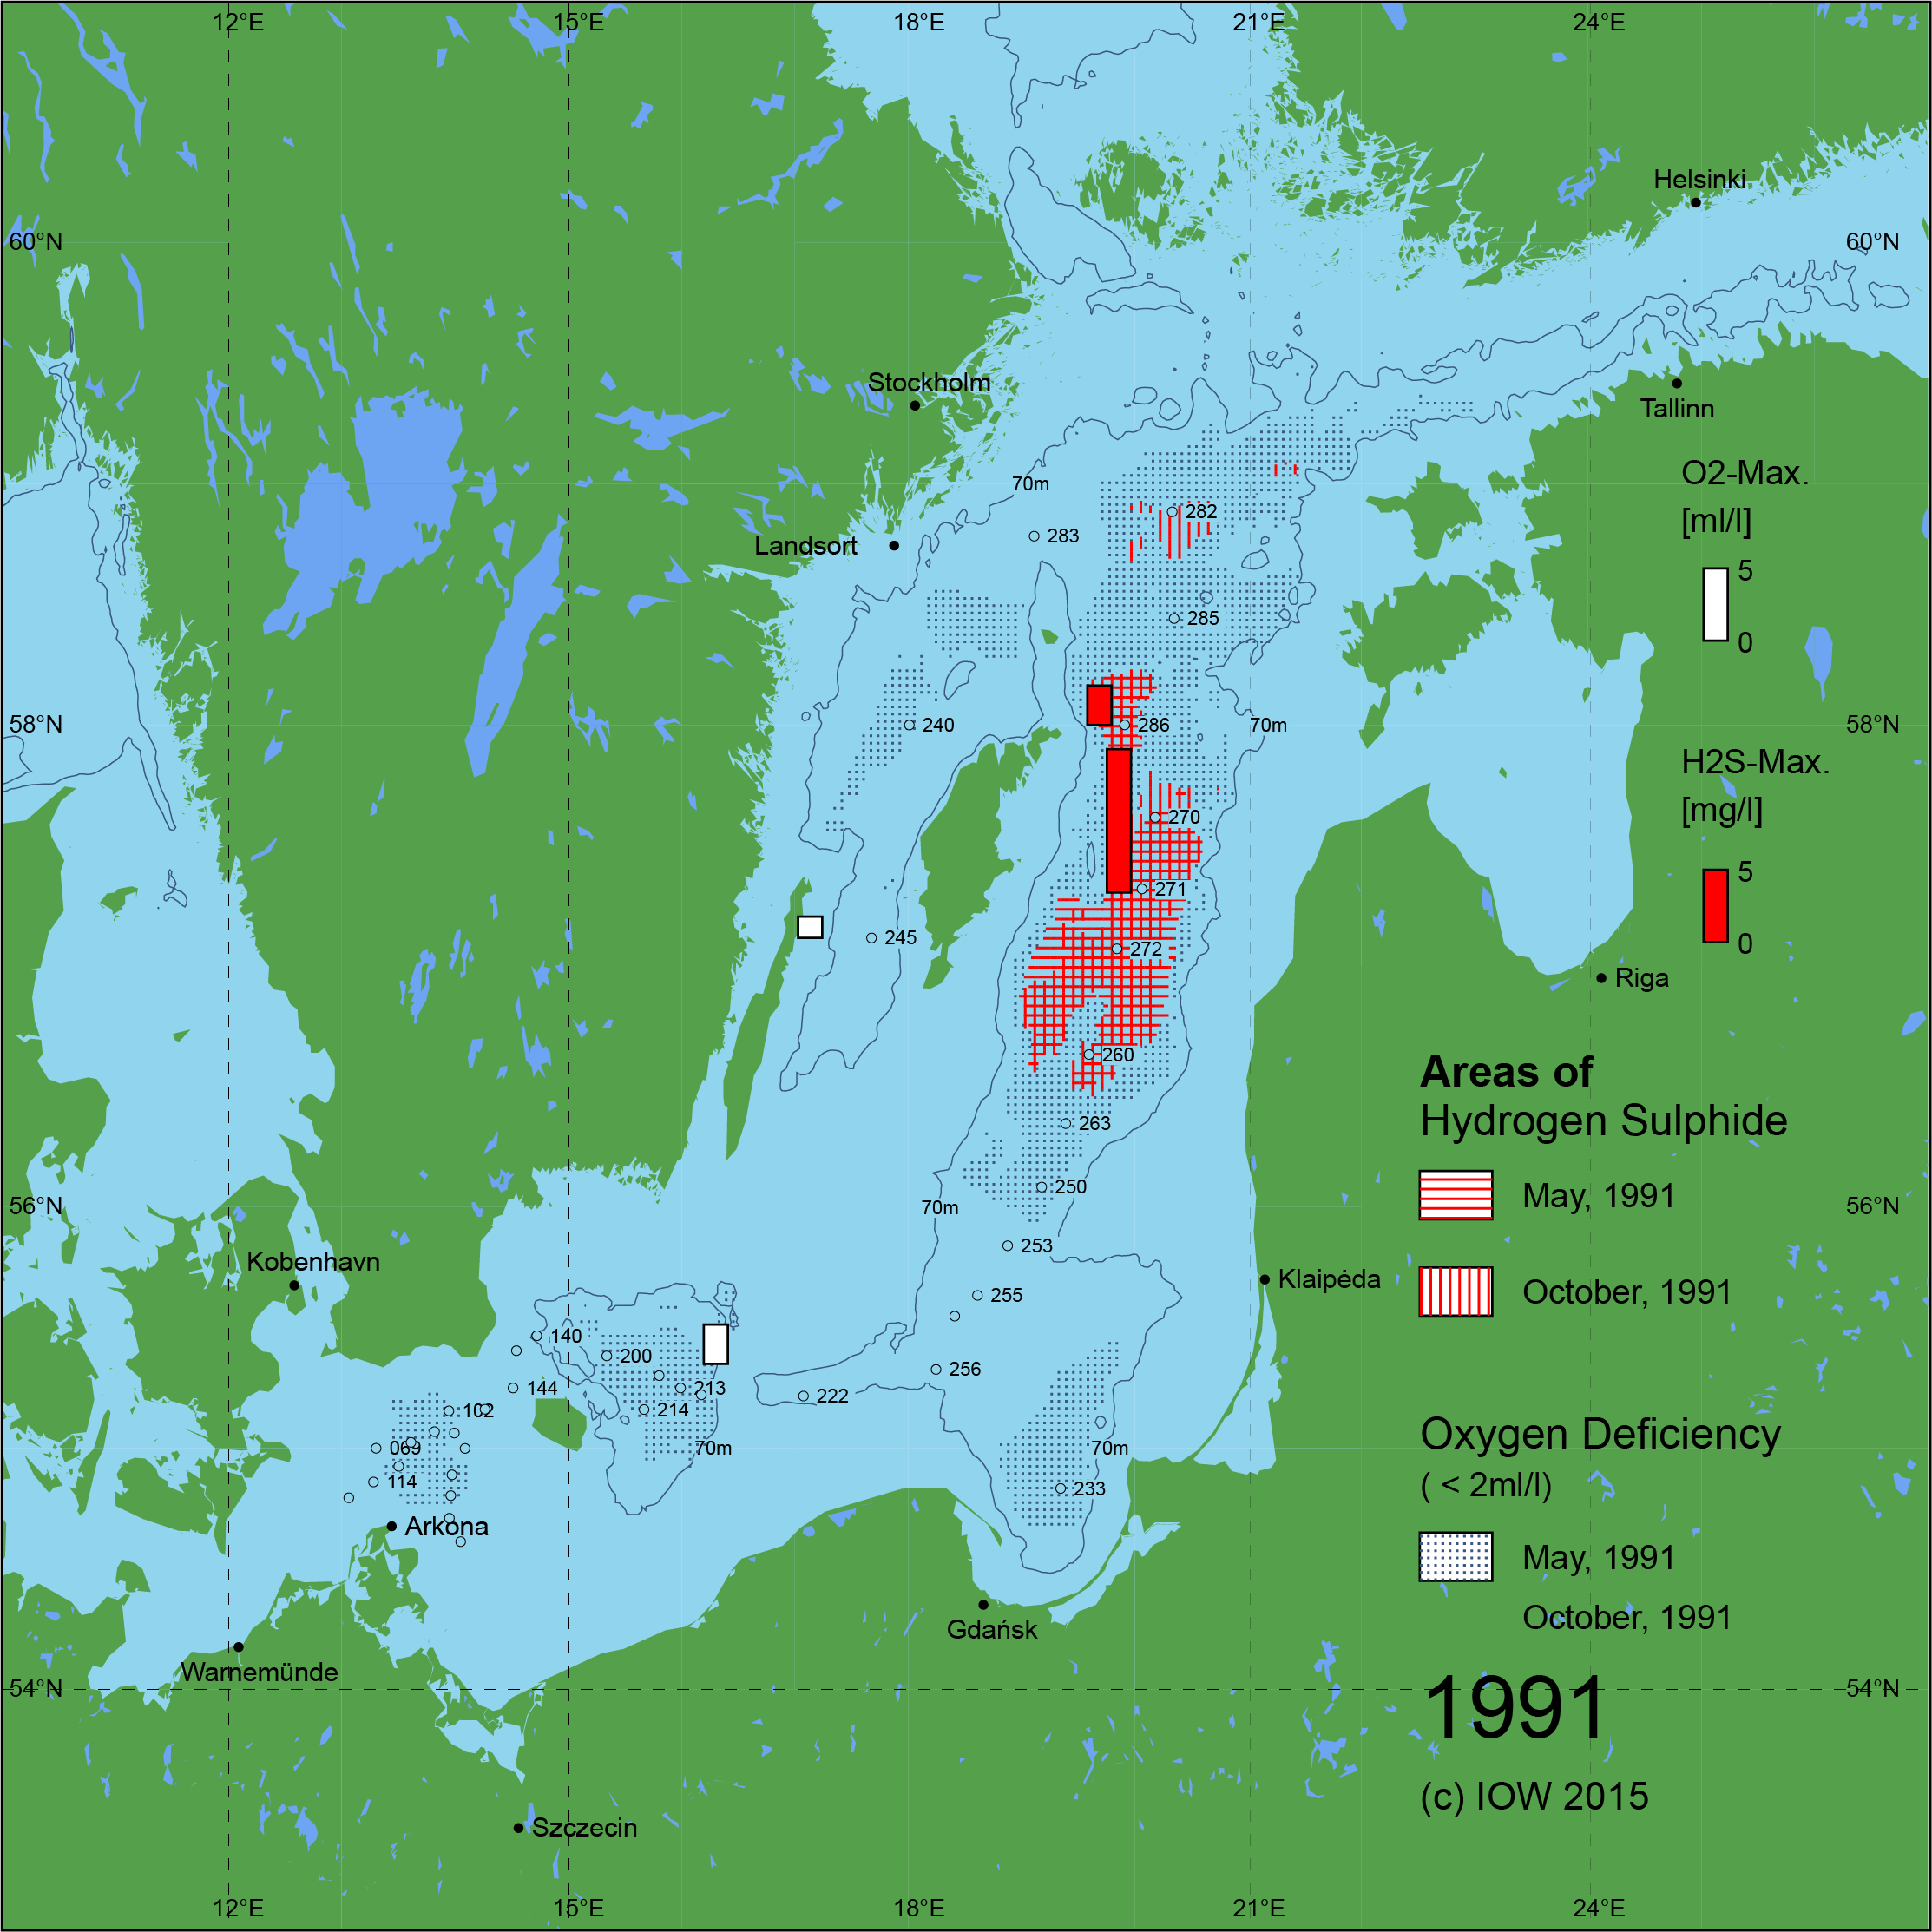 Sauerstoffarme und sauerstofffreie Gebiete in der Ostsee - 1991